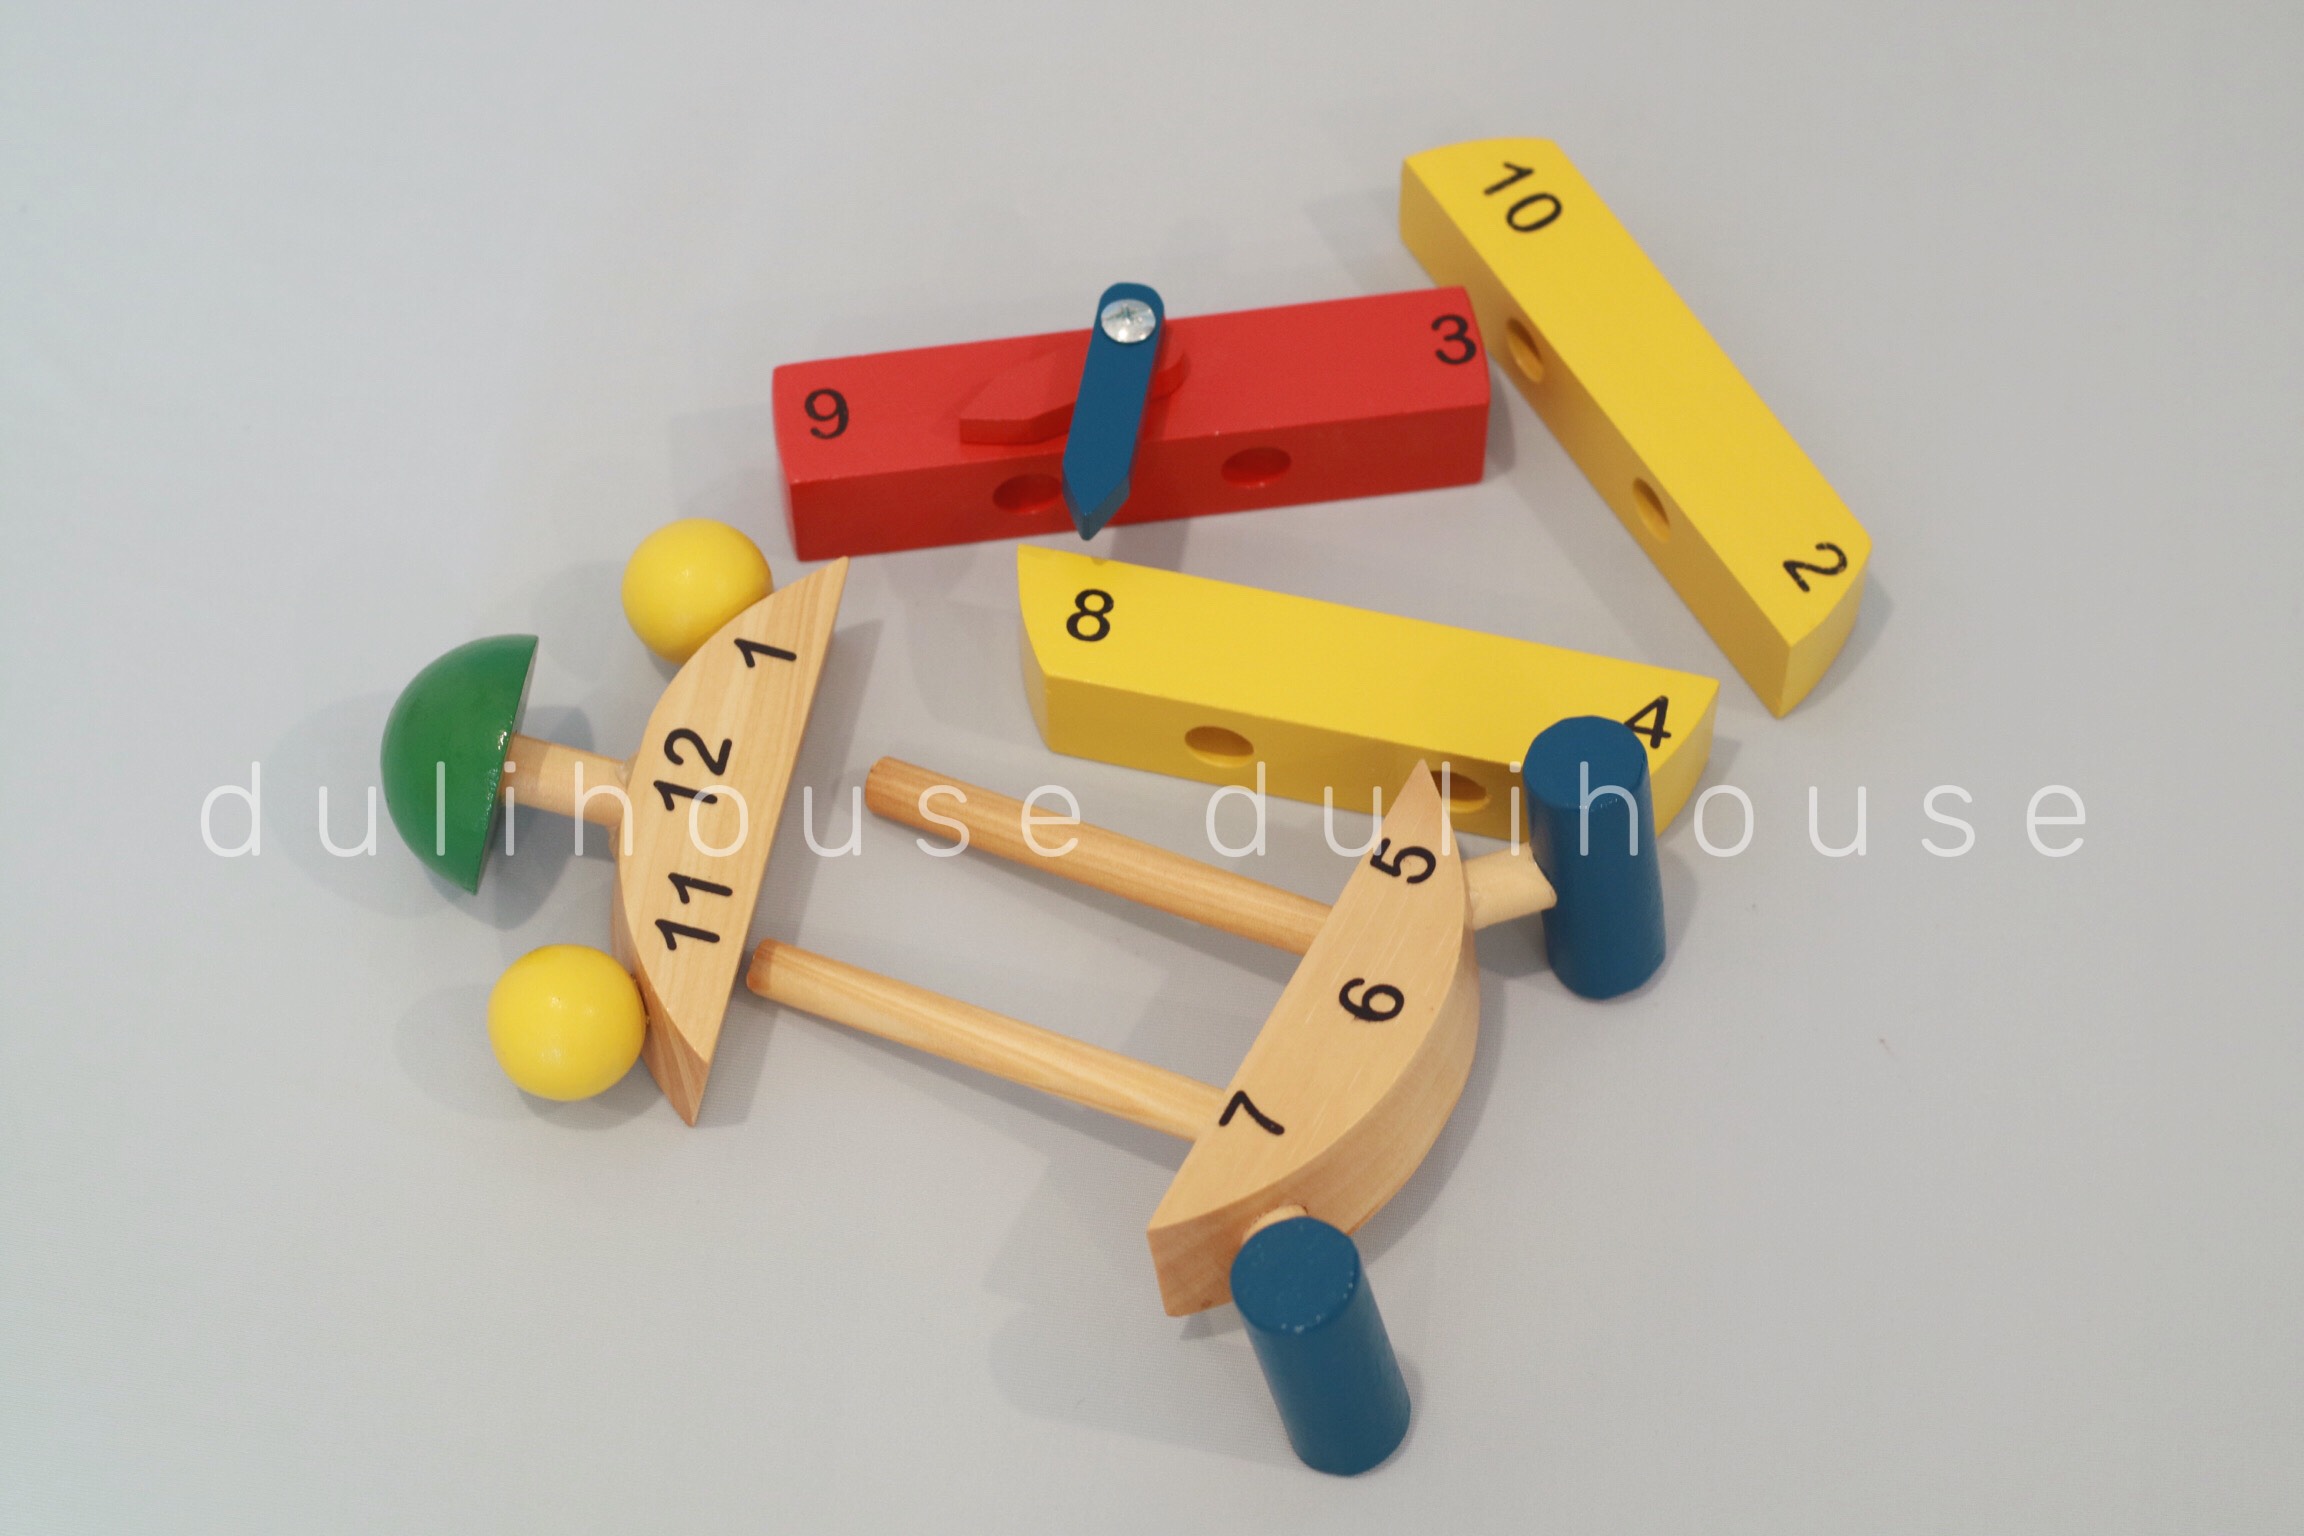 Đồ chơi gỗ đồng hồ lắp ráp, giúp bé học cách xem giờ và nhận biết chữ số